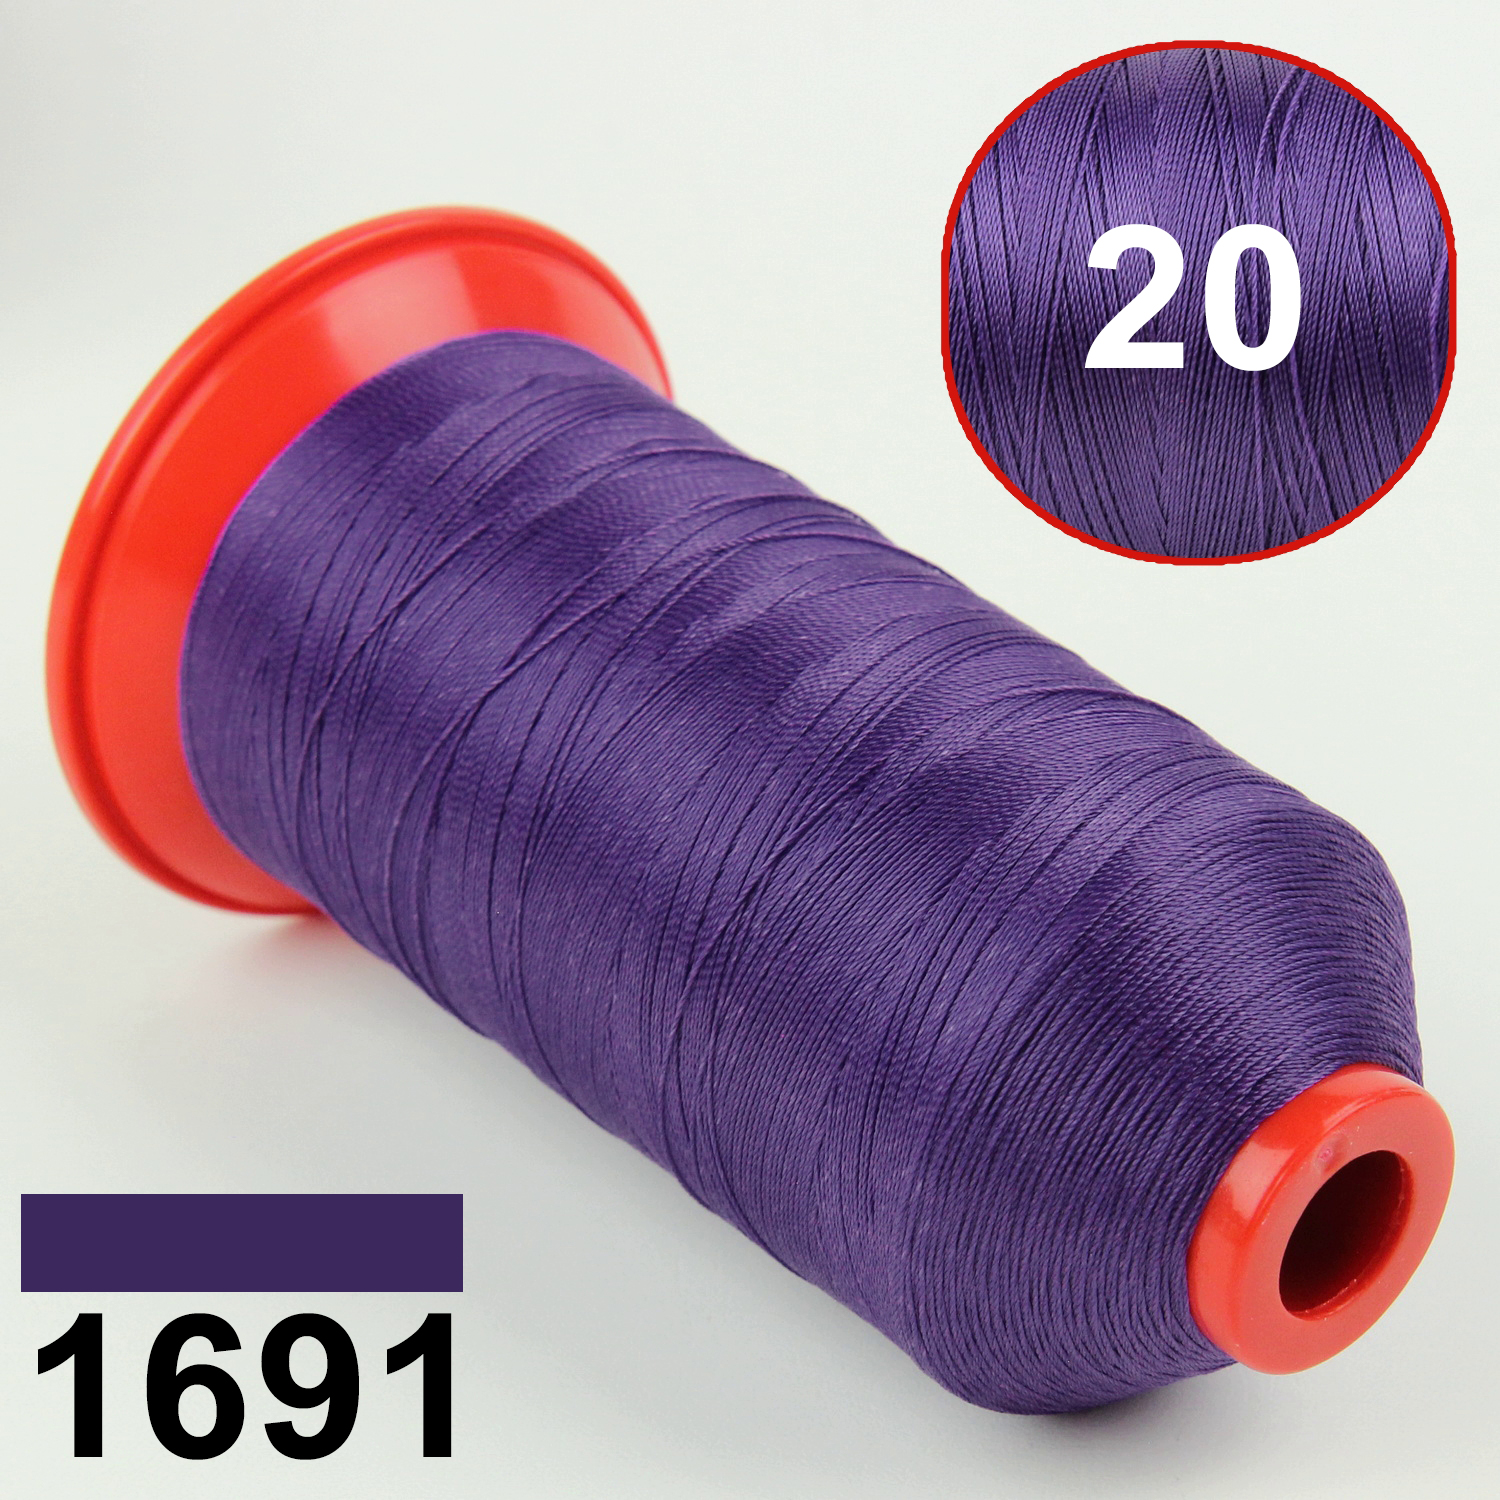 Нить POLYART(ПОЛИАРТ) N20 цвет 1691 фиолетовый, для пошив чехлов на автомобильные сидения и руль, 1500м детальная фотка